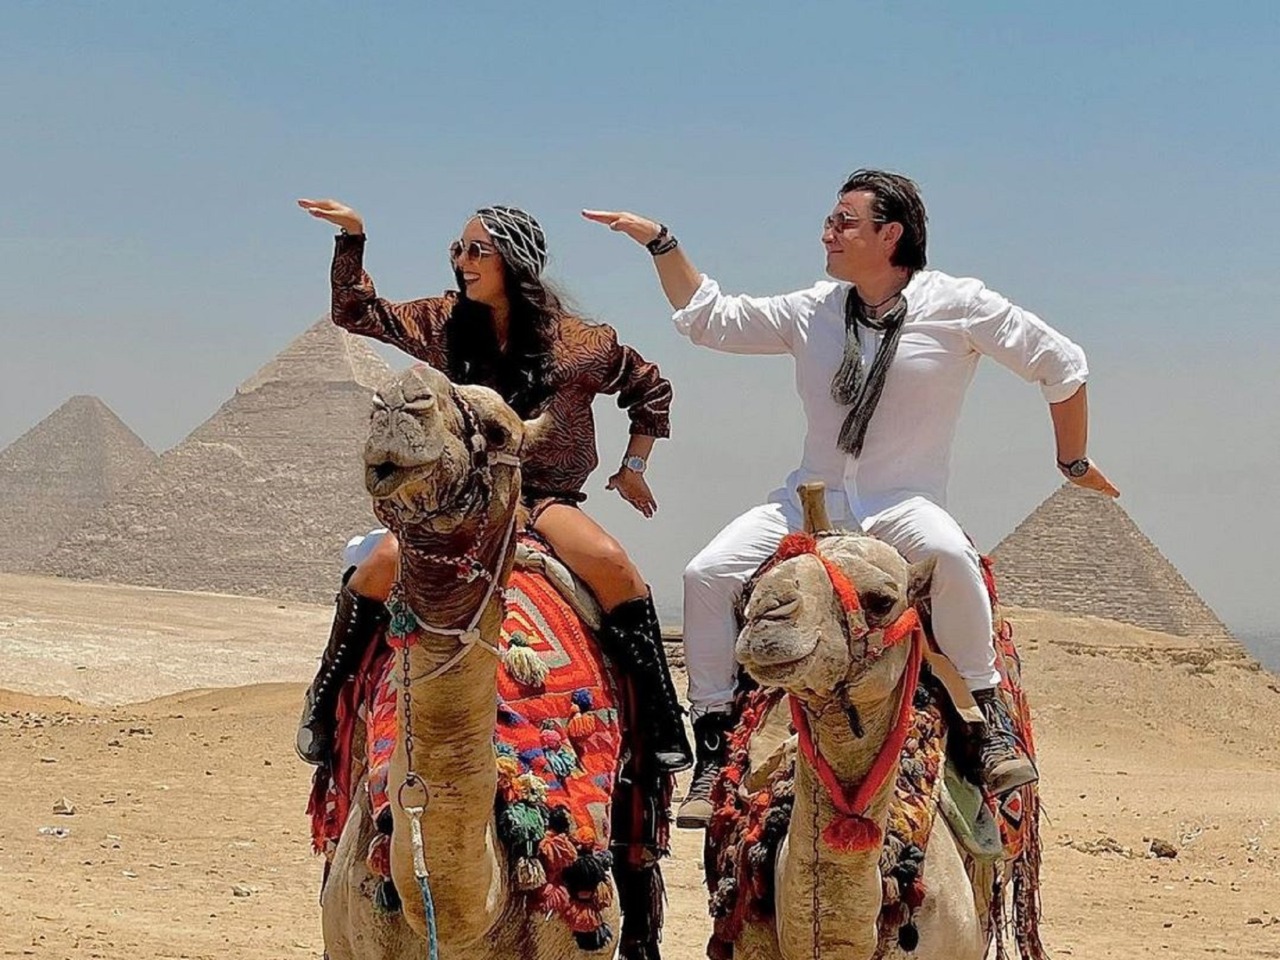 С круиза по Красному морю в Каир — к пирамидам! | Цена 330€, отзывы, описание экскурсии